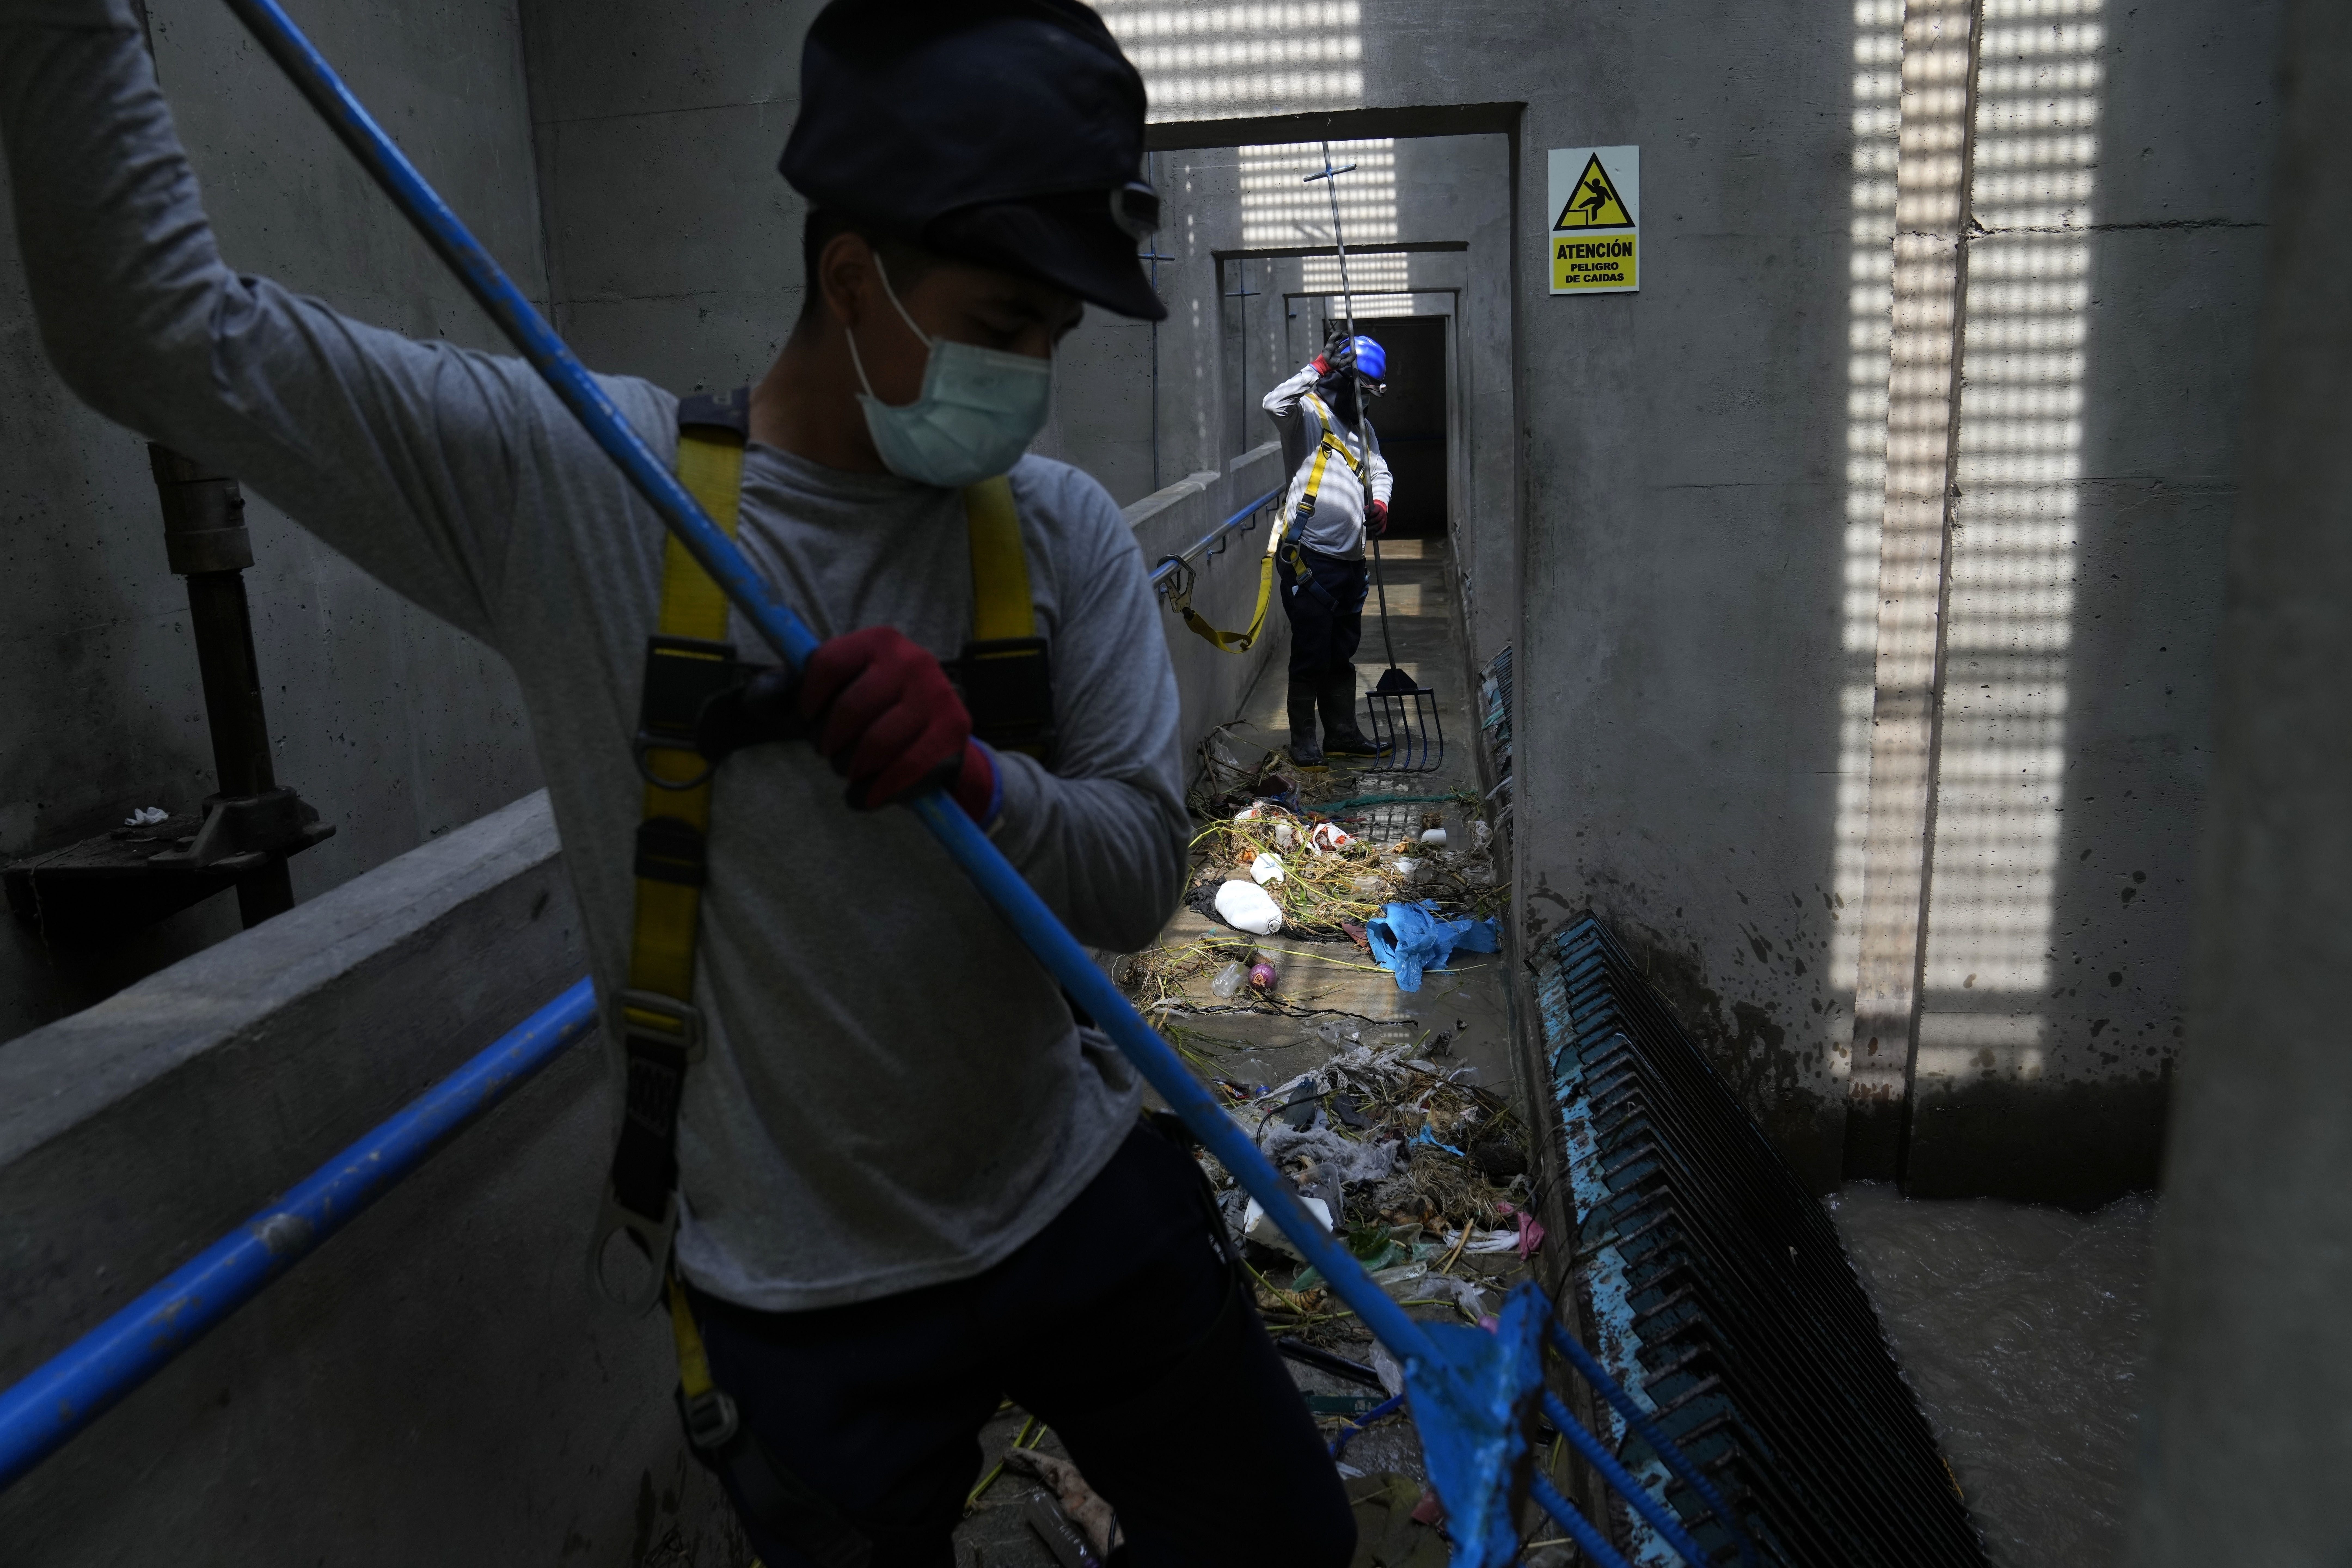 Operarios de tratamiento de aguas recopilan basura dentro de la planta de SEDAPAL, la empresa estatal de suministro de agua, en Lima, Perú, el 21 de marzo de 2023. (AP Foto/Martín Mejía)